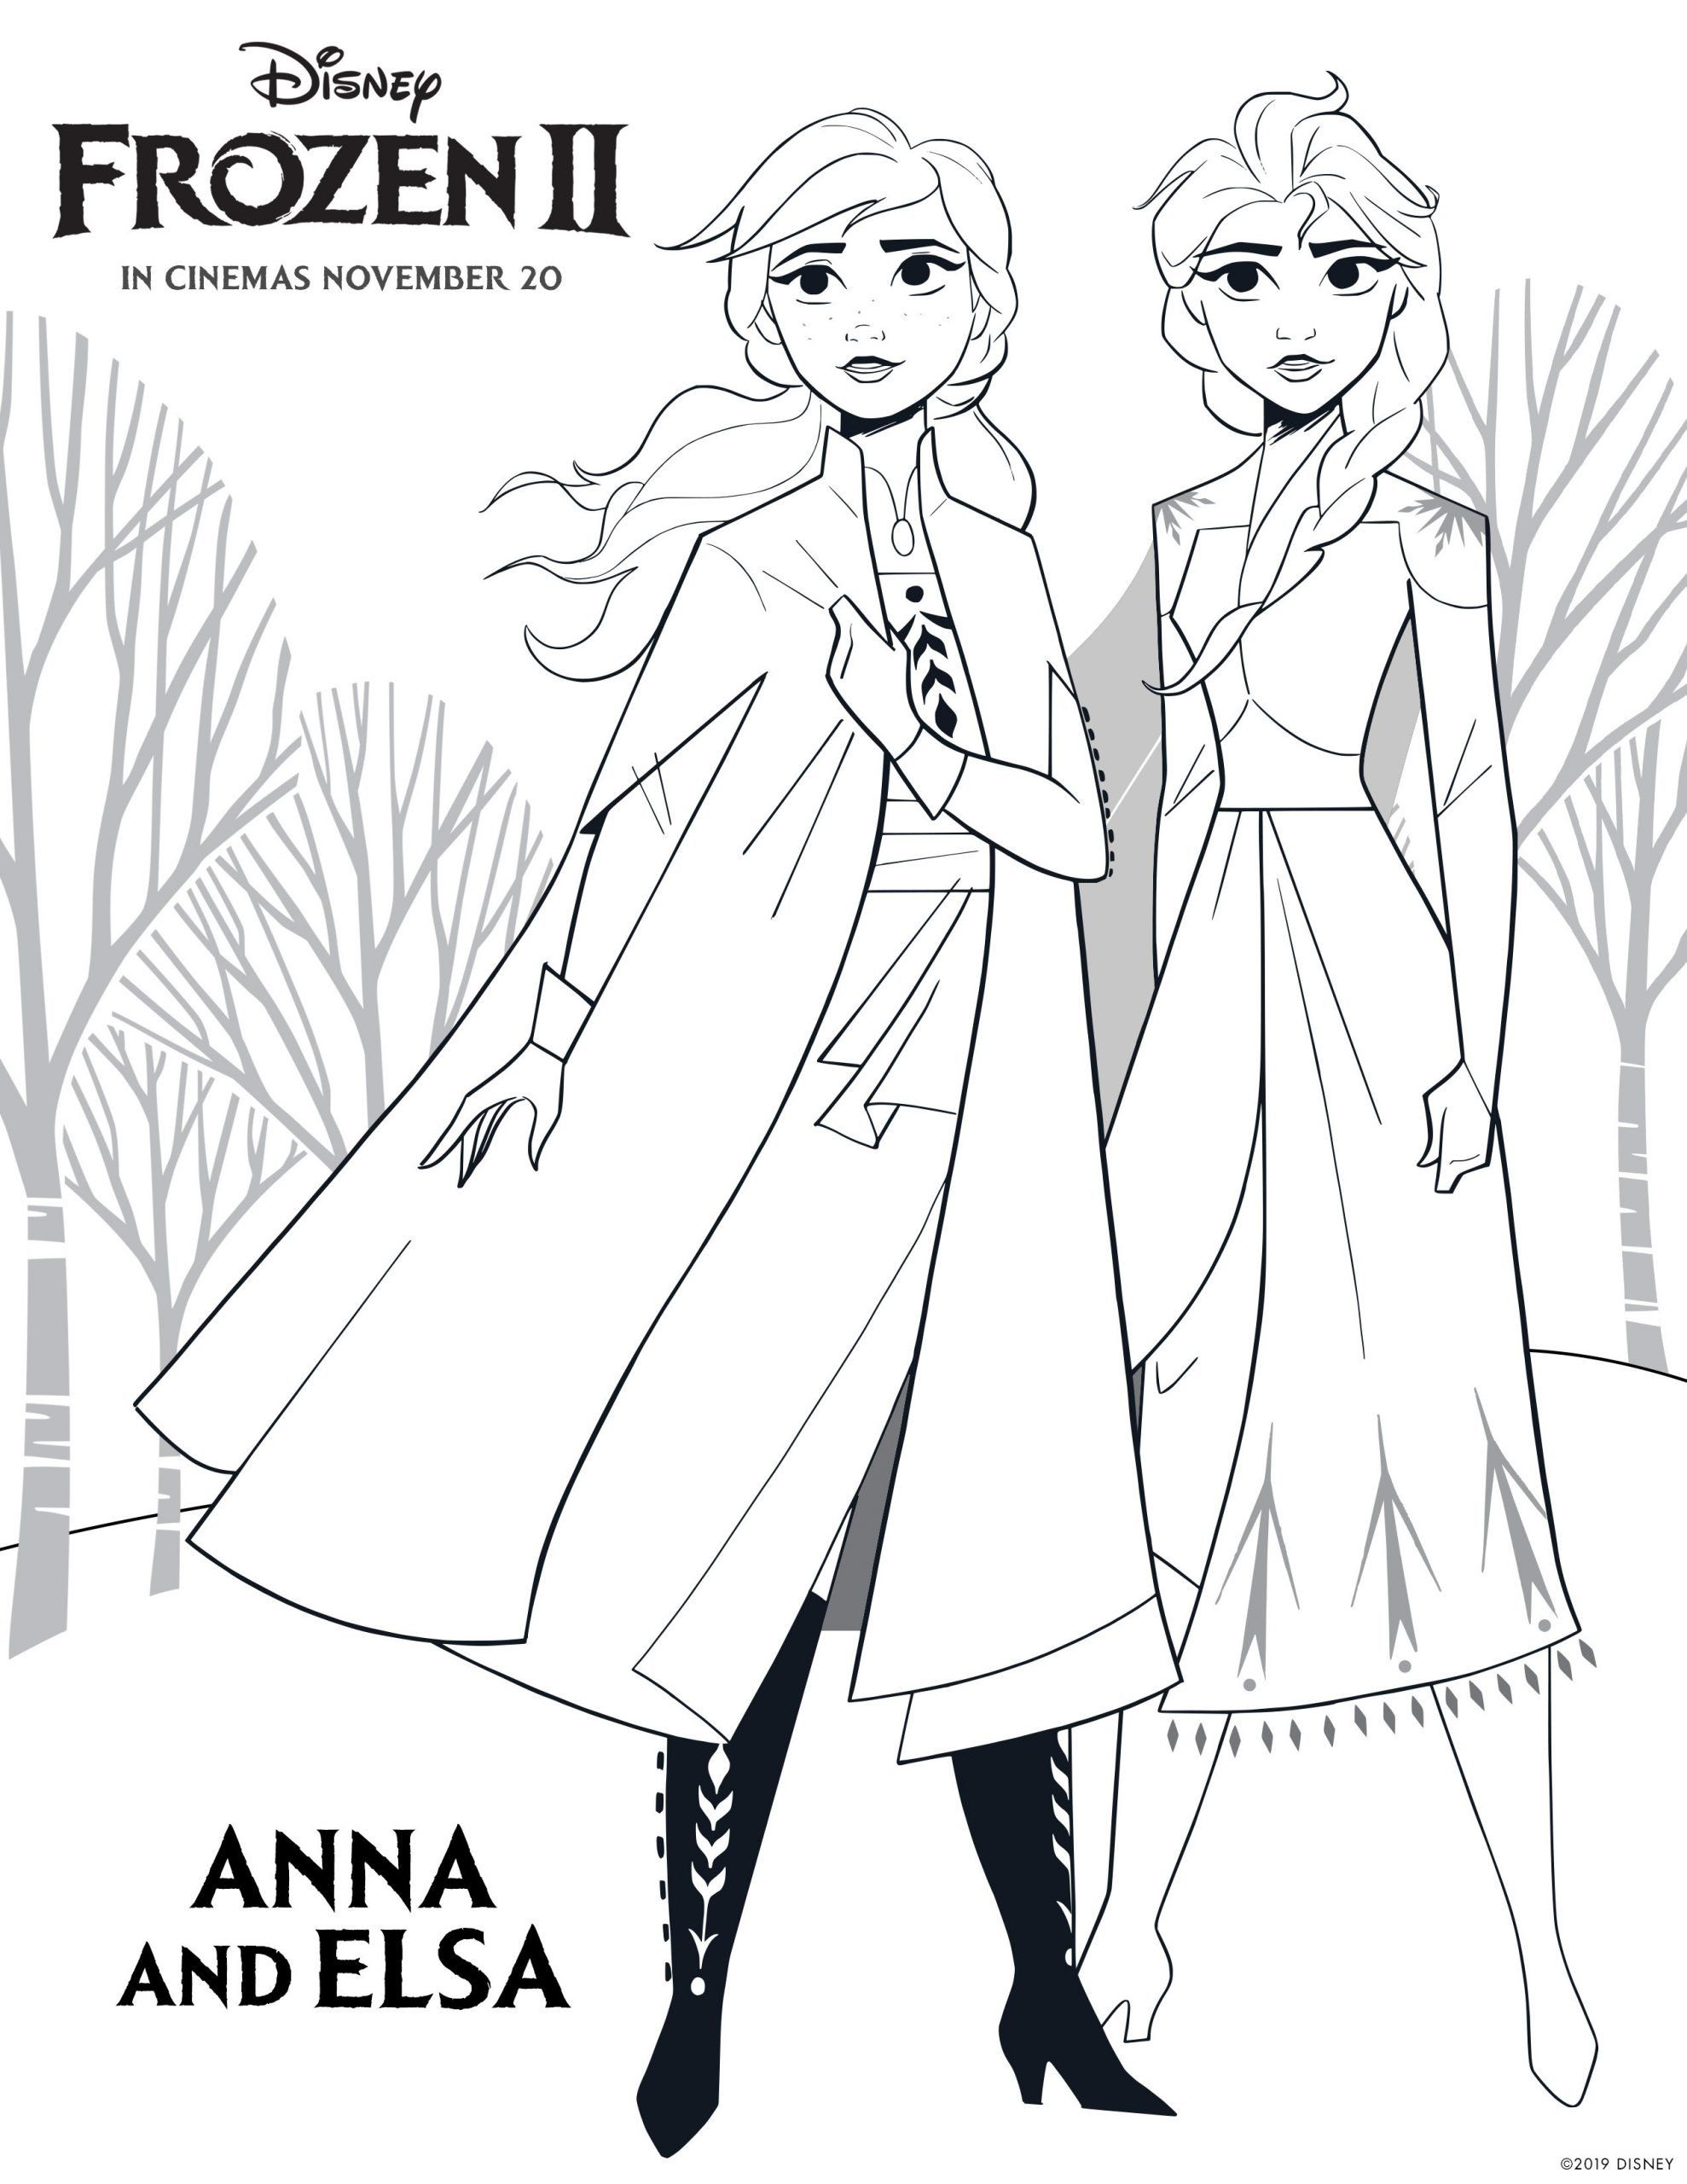 Tranh tô màu công chúa Elsa và Anna trong Frozen II